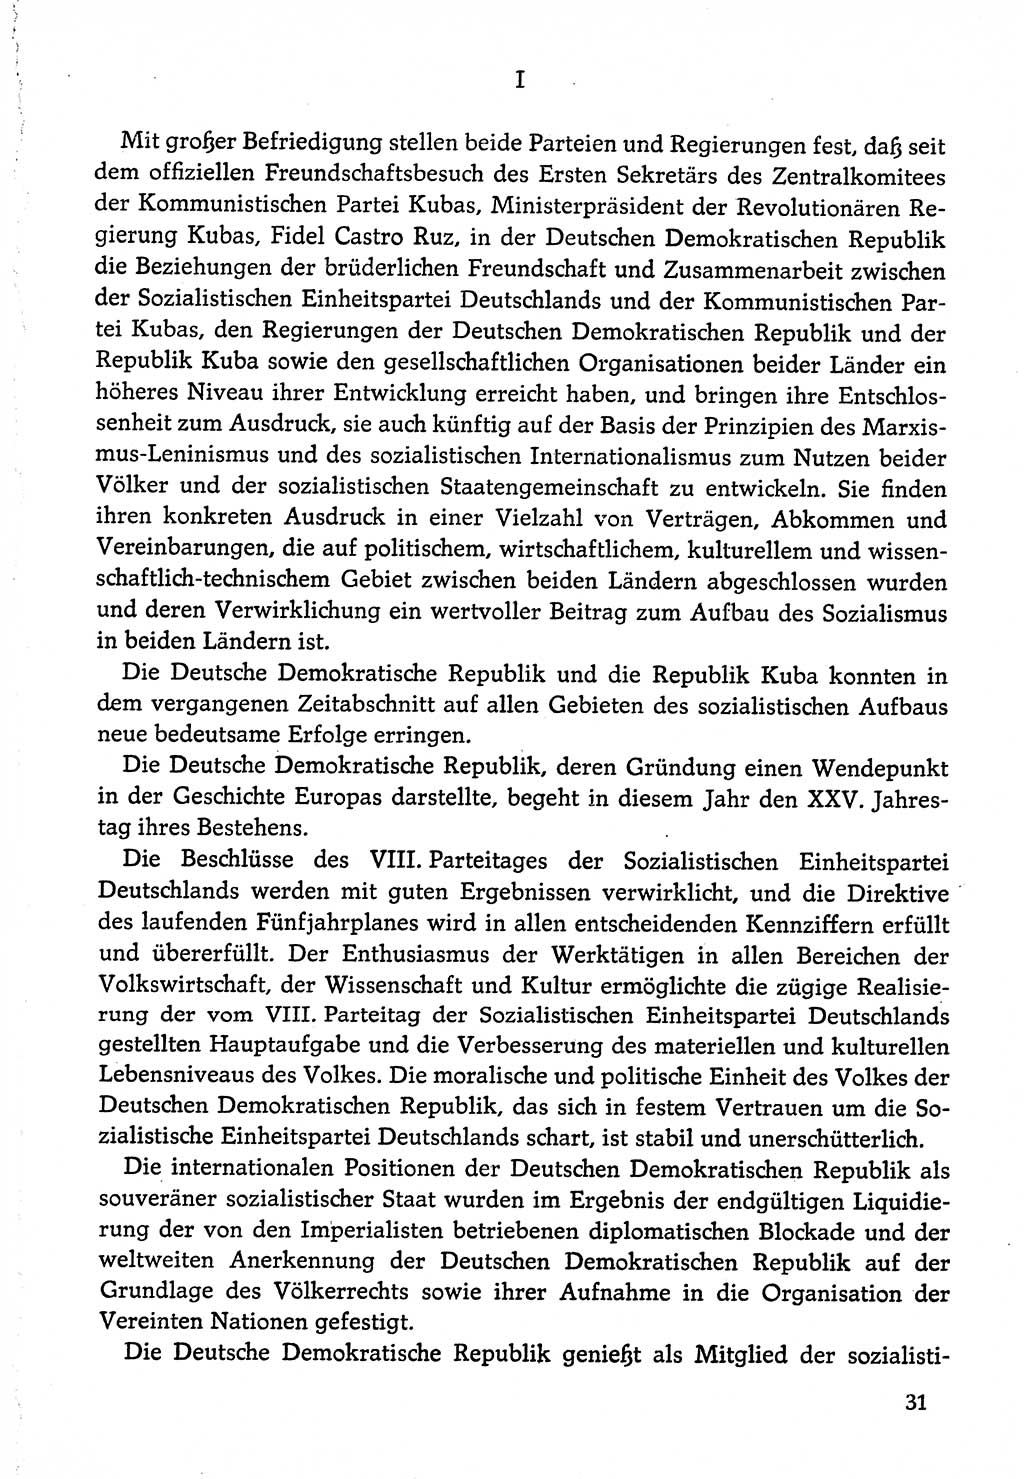 Dokumente der Sozialistischen Einheitspartei Deutschlands (SED) [Deutsche Demokratische Republik (DDR)] 1974-1975, Seite 31 (Dok. SED DDR 1978, Bd. ⅩⅤ, S. 31)